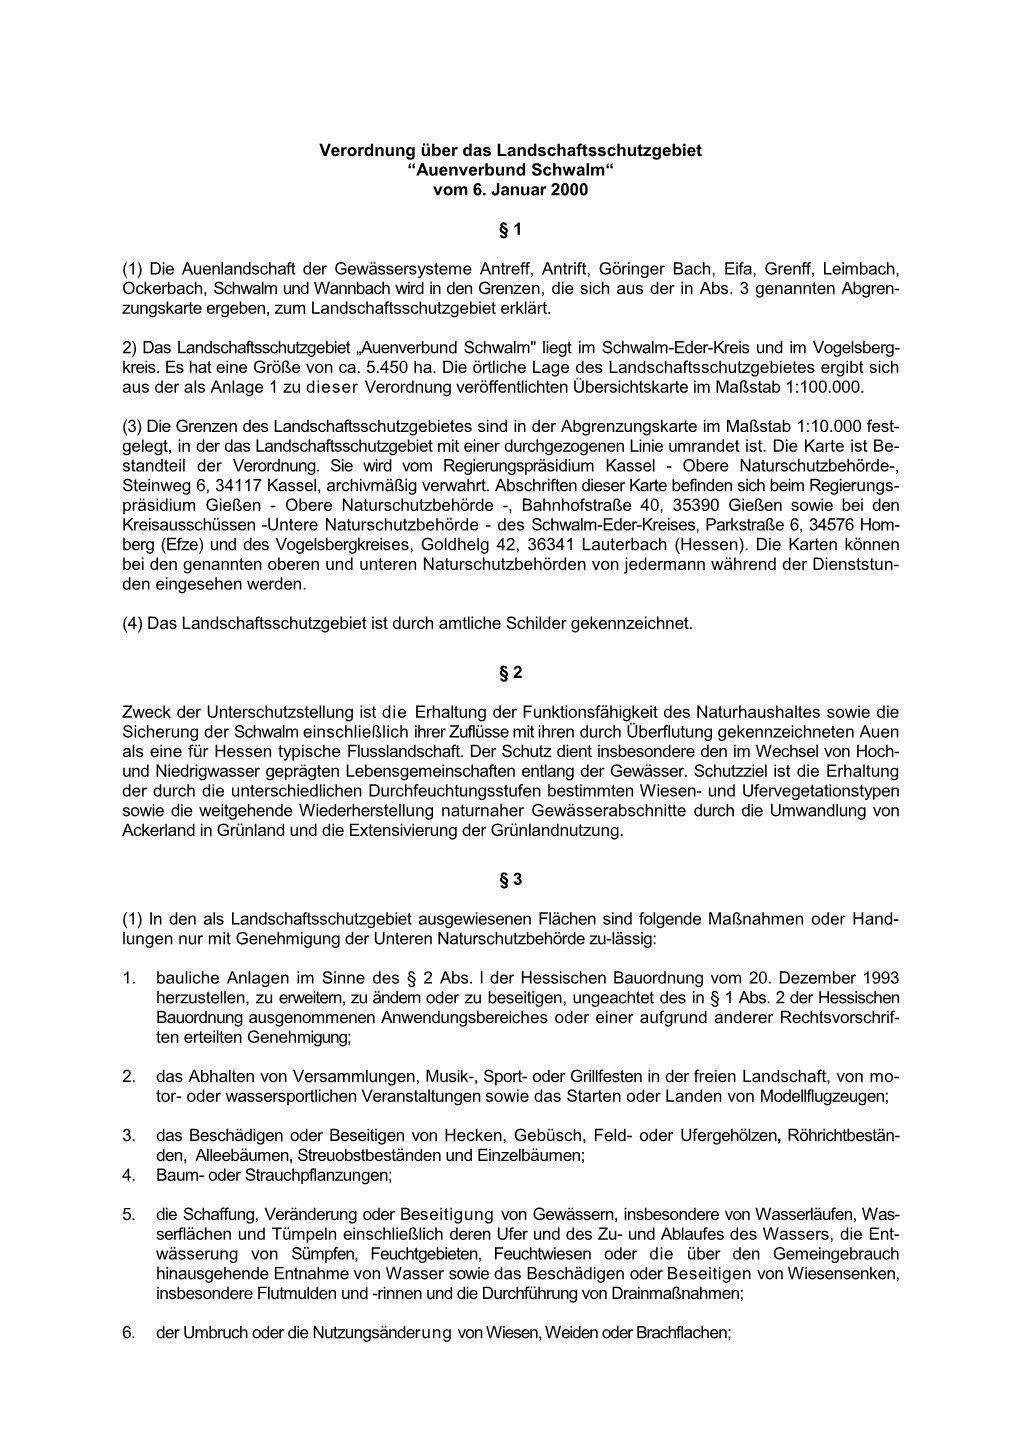 Verordnung Über Das Landschaftsschutzgebiet “Auenverbund Schwalm“ Vom 6